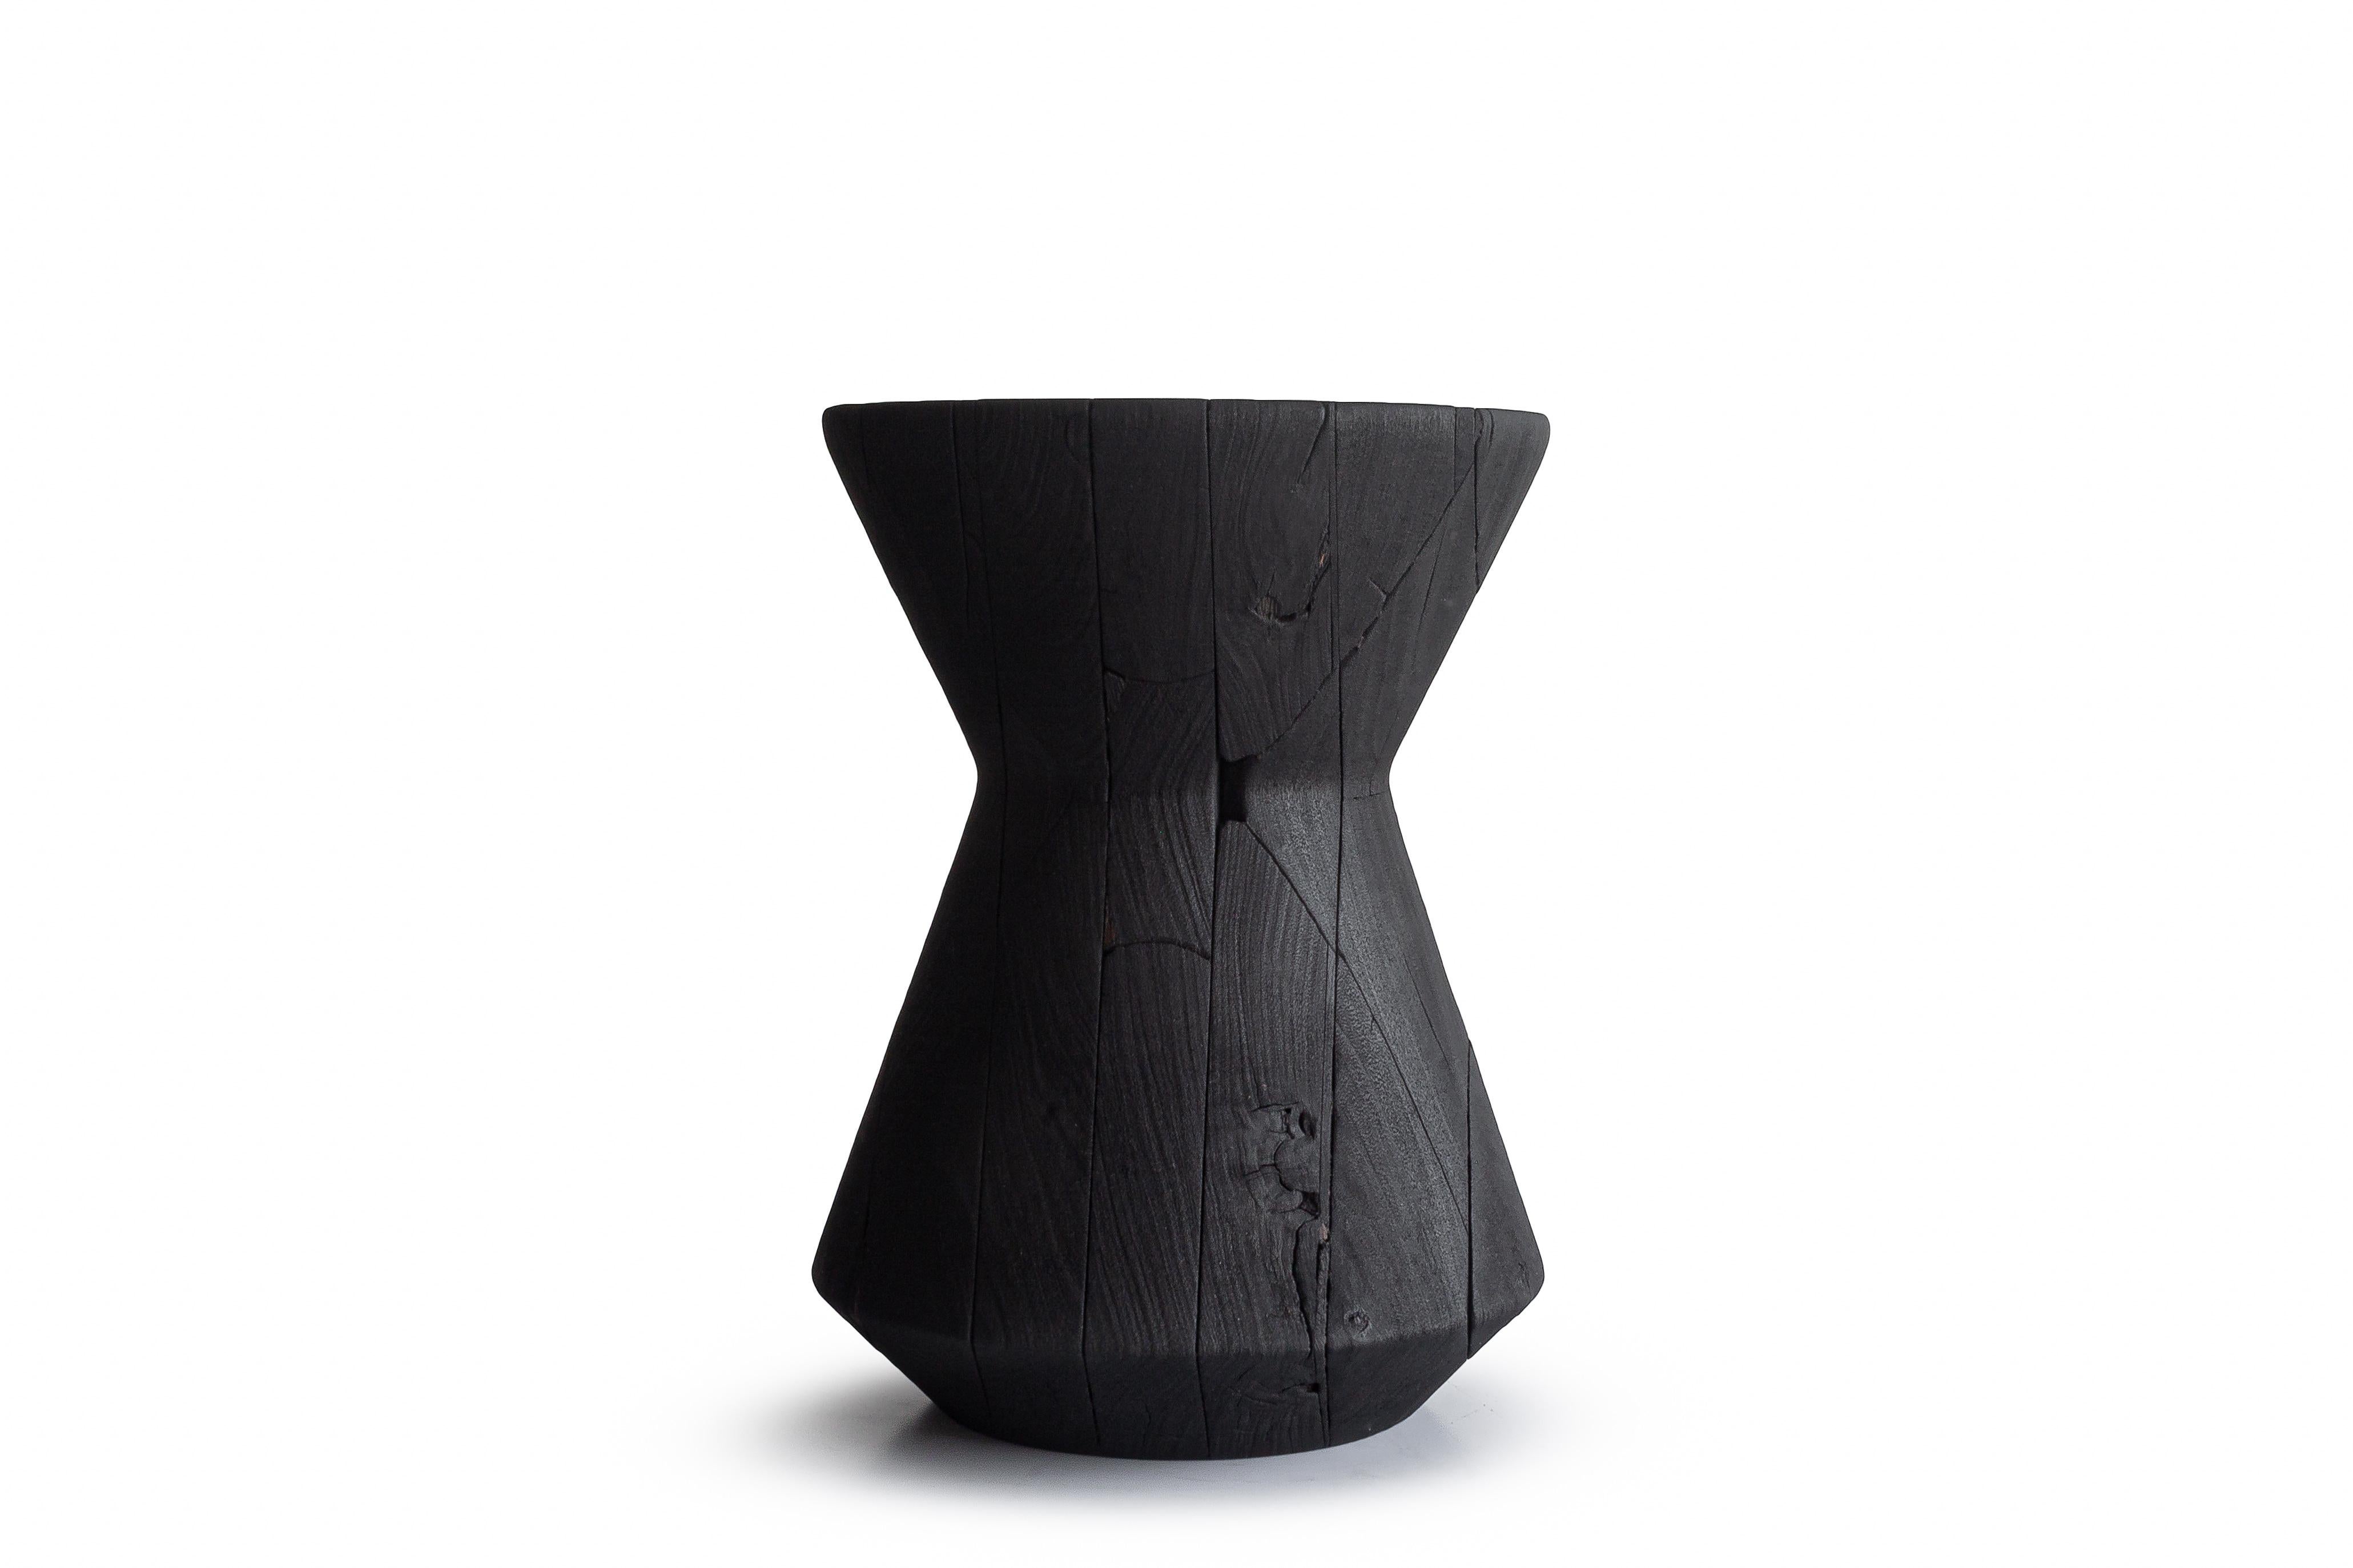 Moderner schwarzer Hocker Yakisugi von Camilo Andres Rodriguez Marquez (alias CarmWorks)

Verbranntes Holz 

Für den Außeneinsatz geeignet

Jedes Stück ist eine Einzelanfertigung und wird von der Künstlerin handgefertigt.

--
Camilo Andres